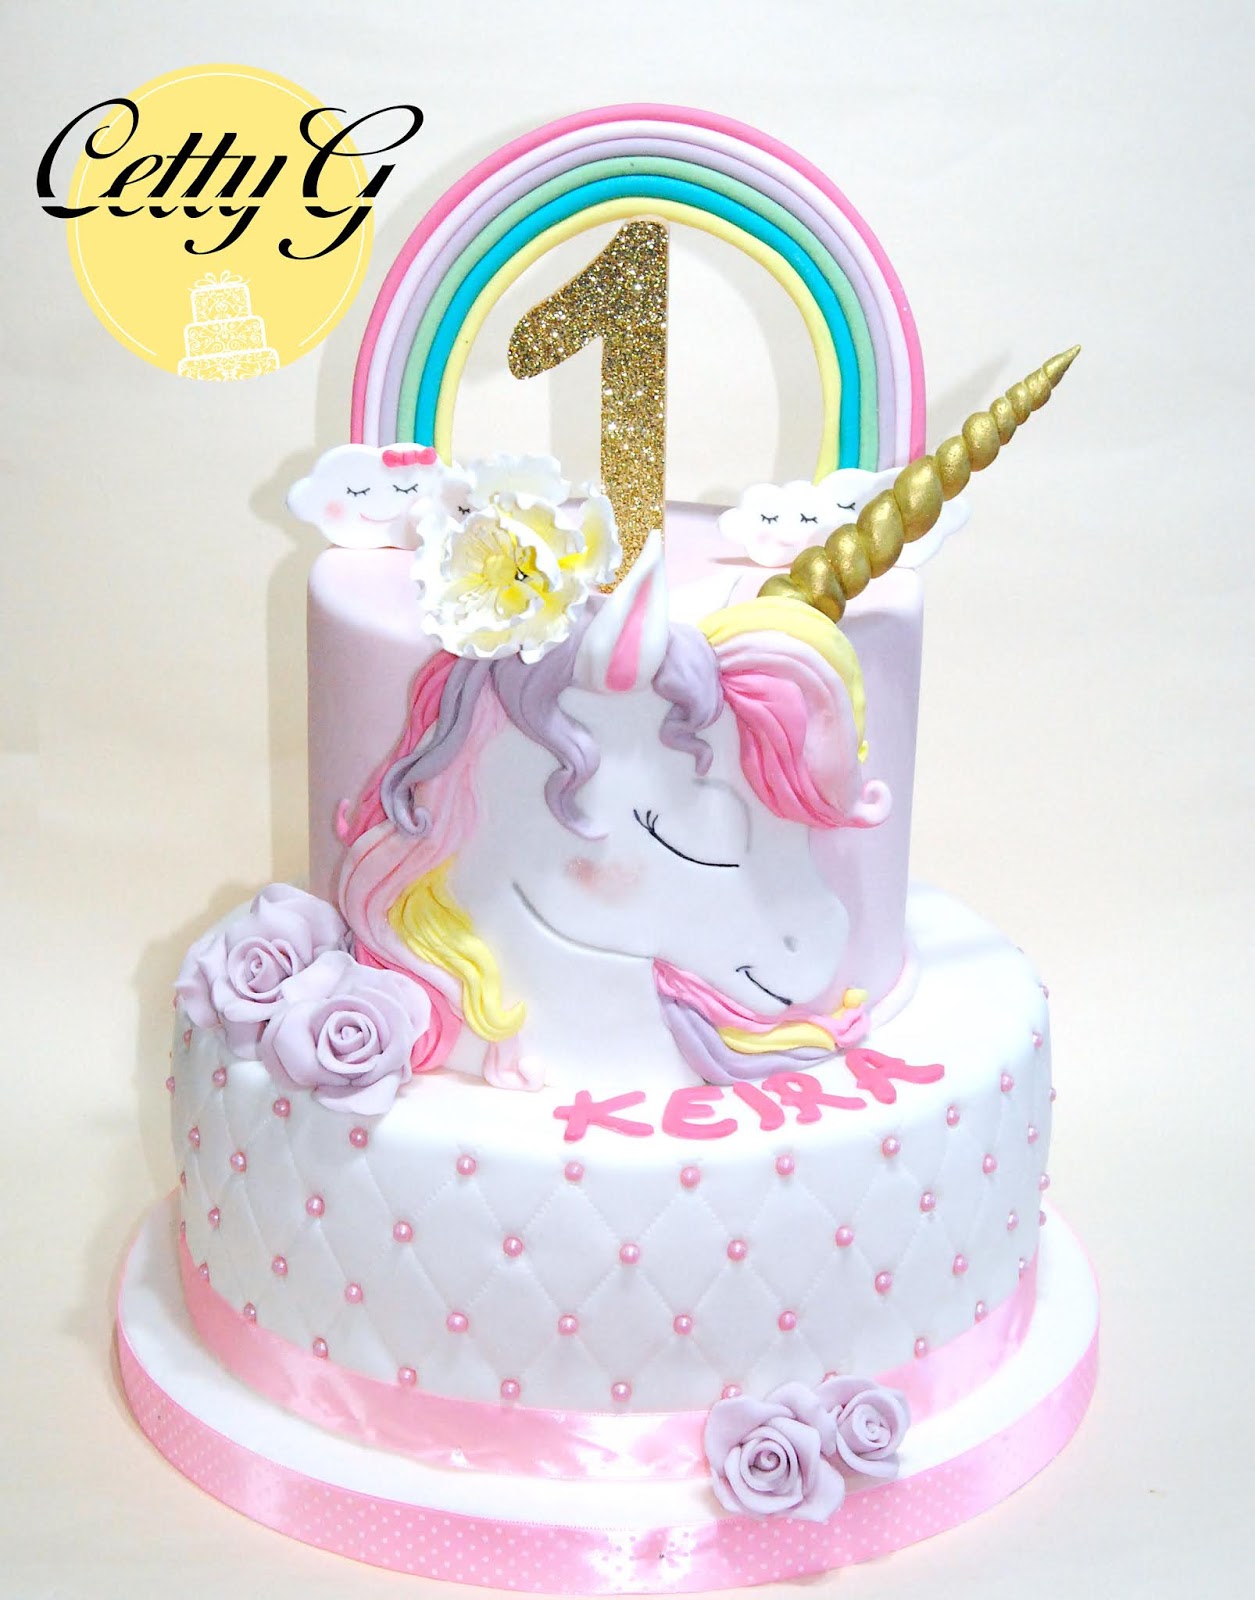 Unicorn Cake Topper, Decorazione della torta unicorno d'oro fatta